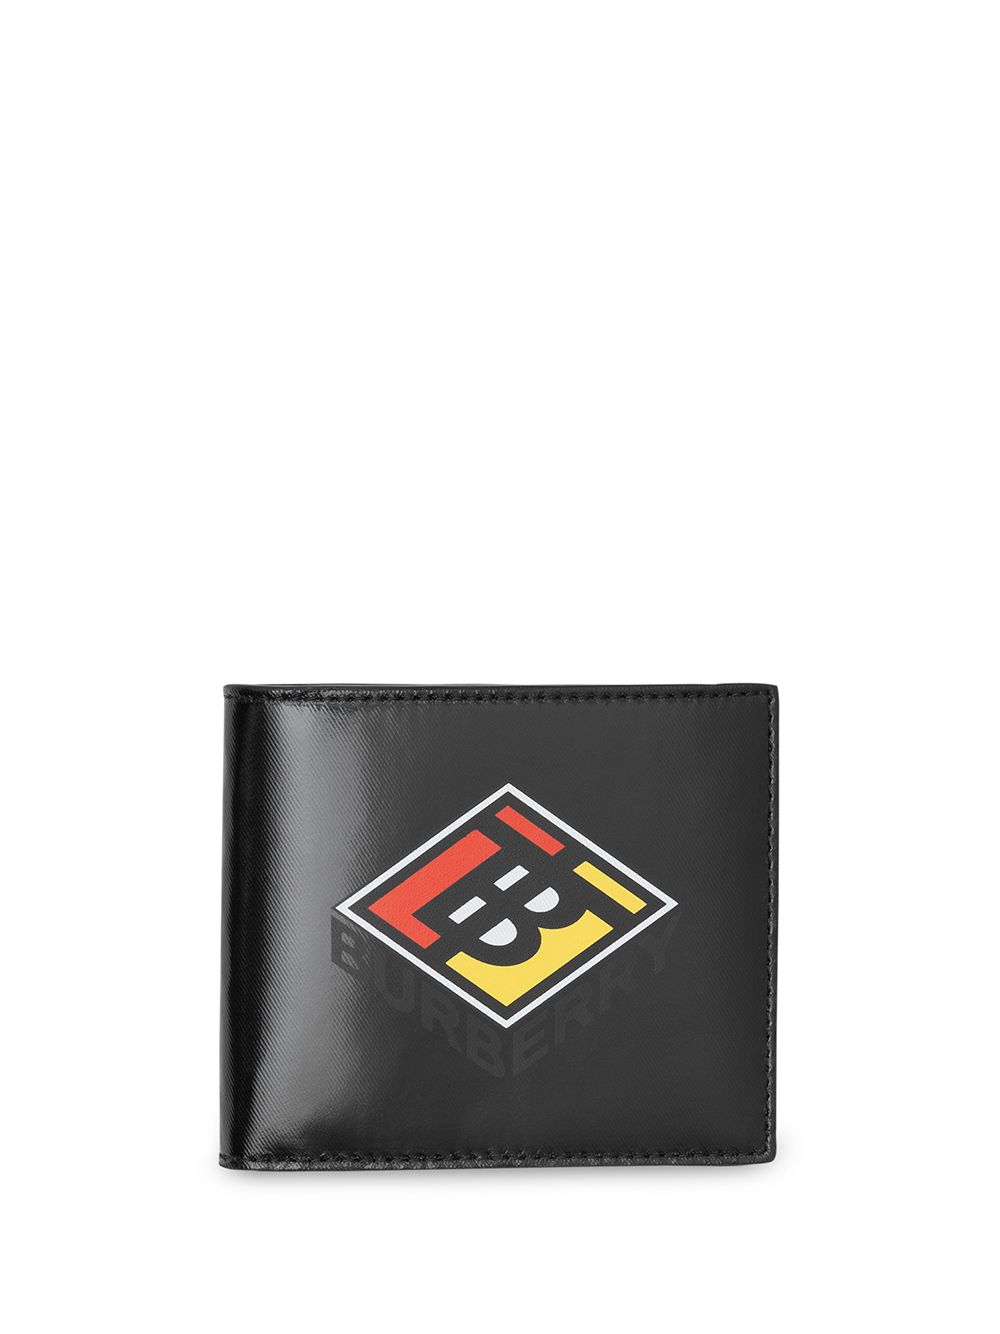 фото Burberry складной кошелек с логотипом